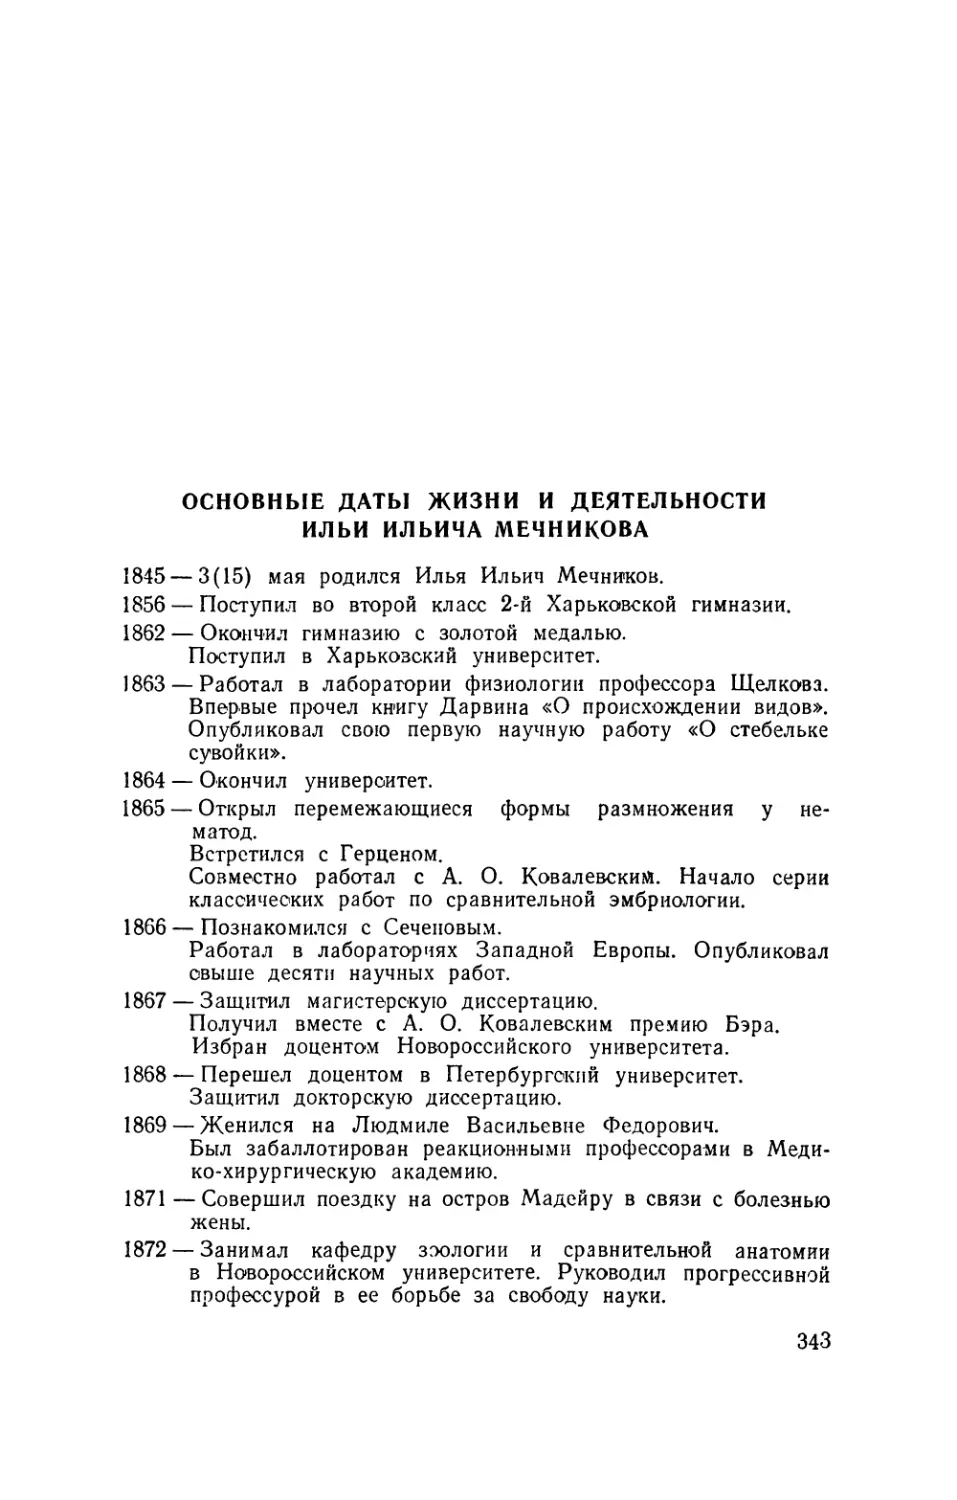 Основные даты жизни и деятельности Ильи Ильича Мечникова